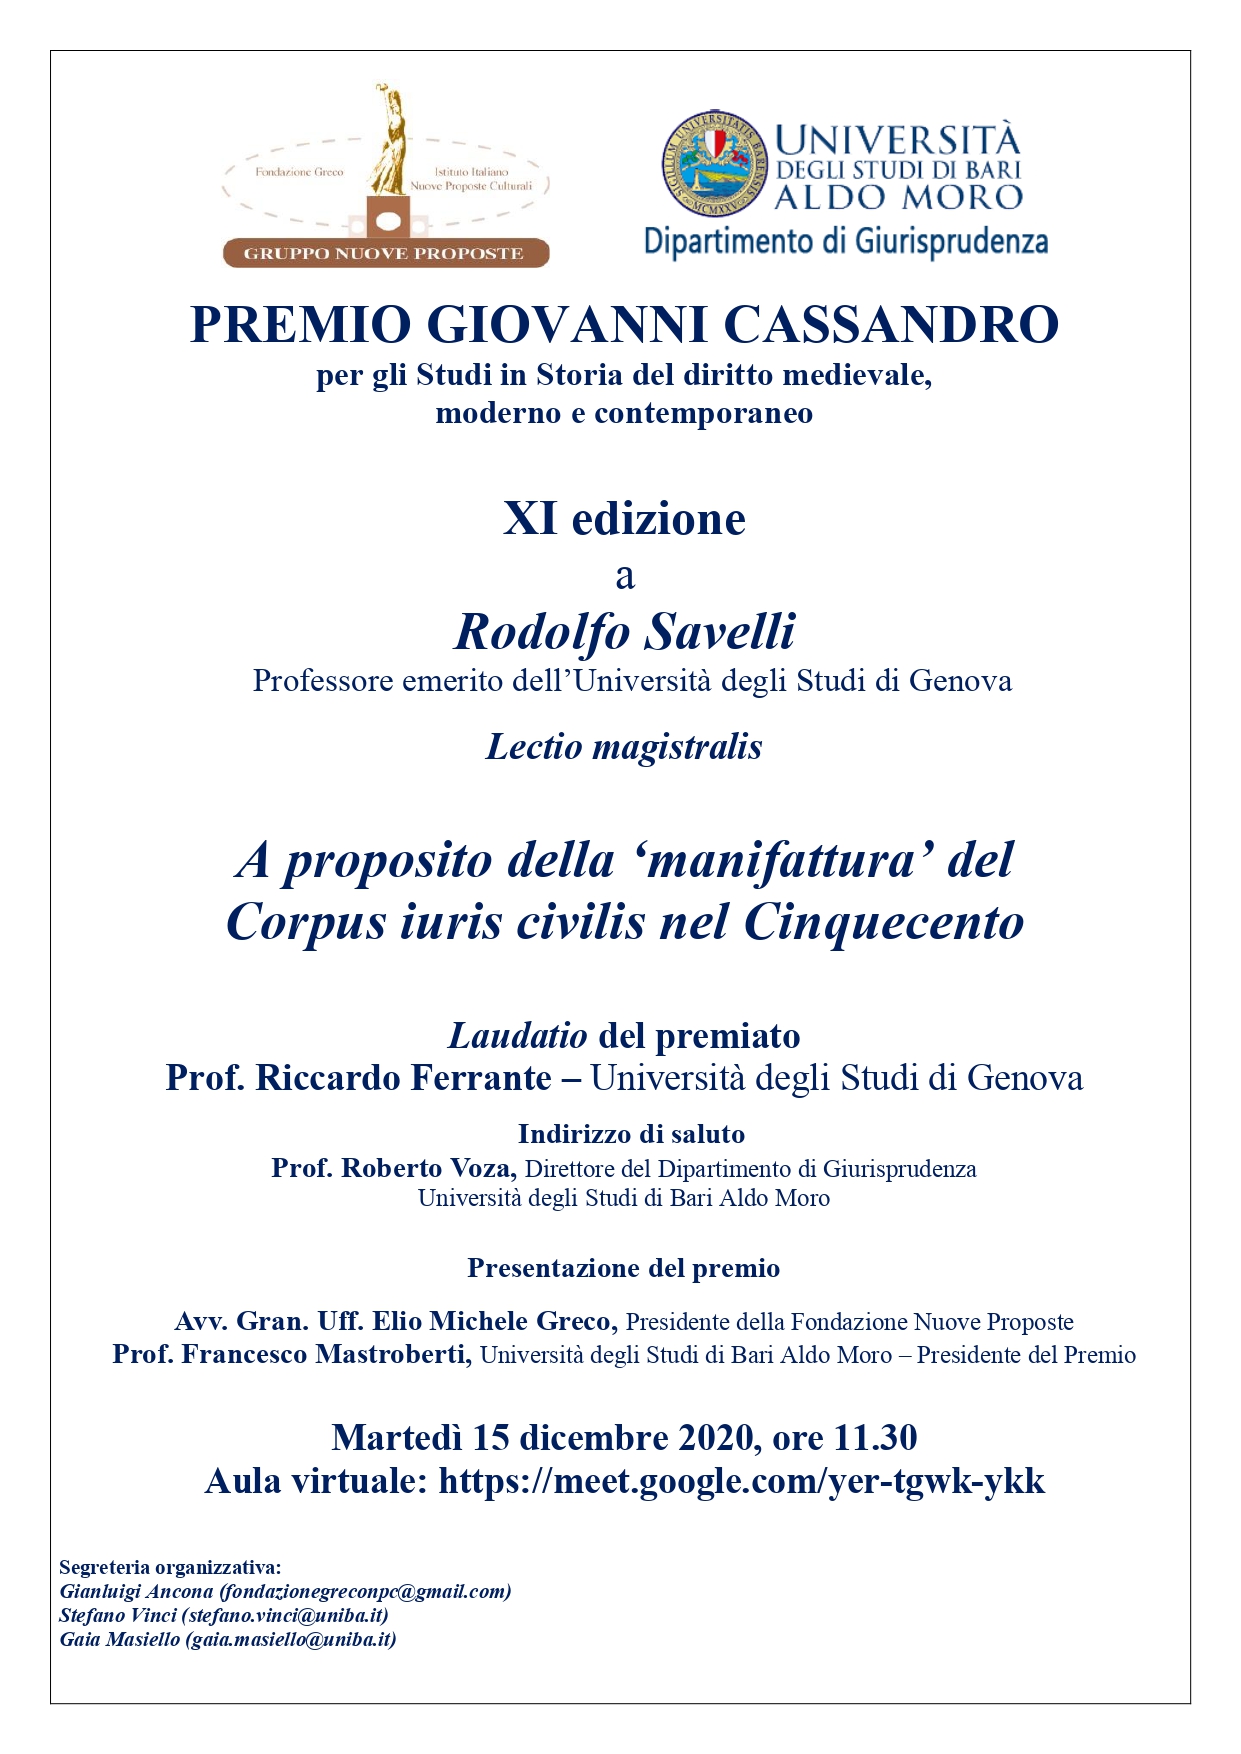 XI Edizione Premio Cassandro - Locandina